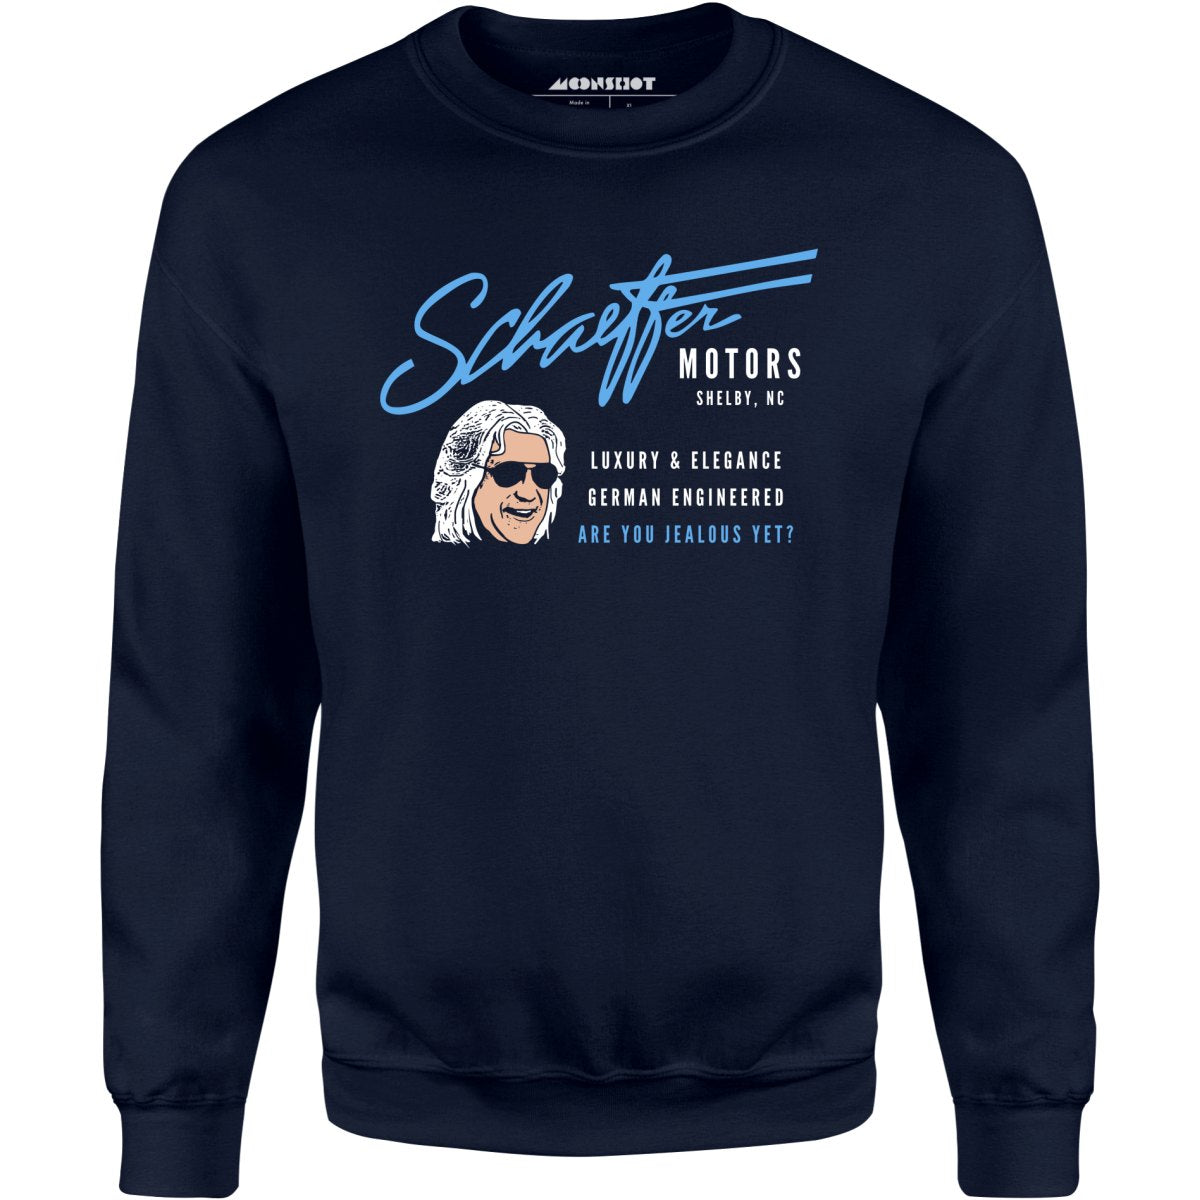 Schaeffer Motors - Unisex Sweatshirt